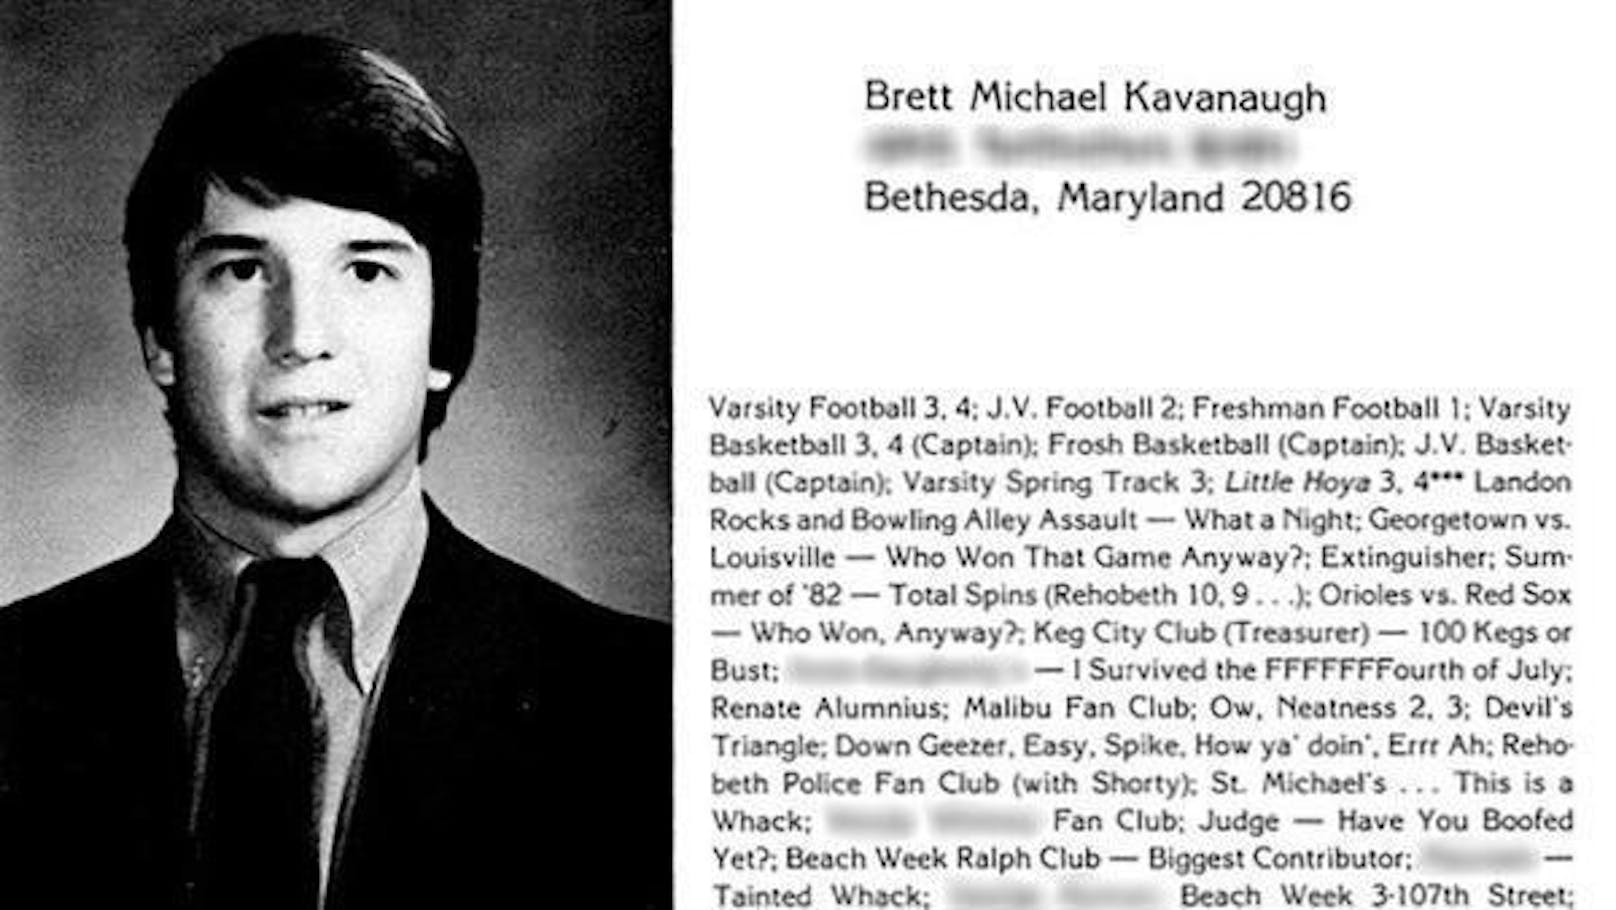 Kavanaugh listet in seinem Eintrag ins Schuljahrbuch von 1983 seine sportlichen Erfolge auf, um darunter Anspielungen auf durchzechte Nächte und Insiderwitze zu Alkoholkonsum aufzureihen.